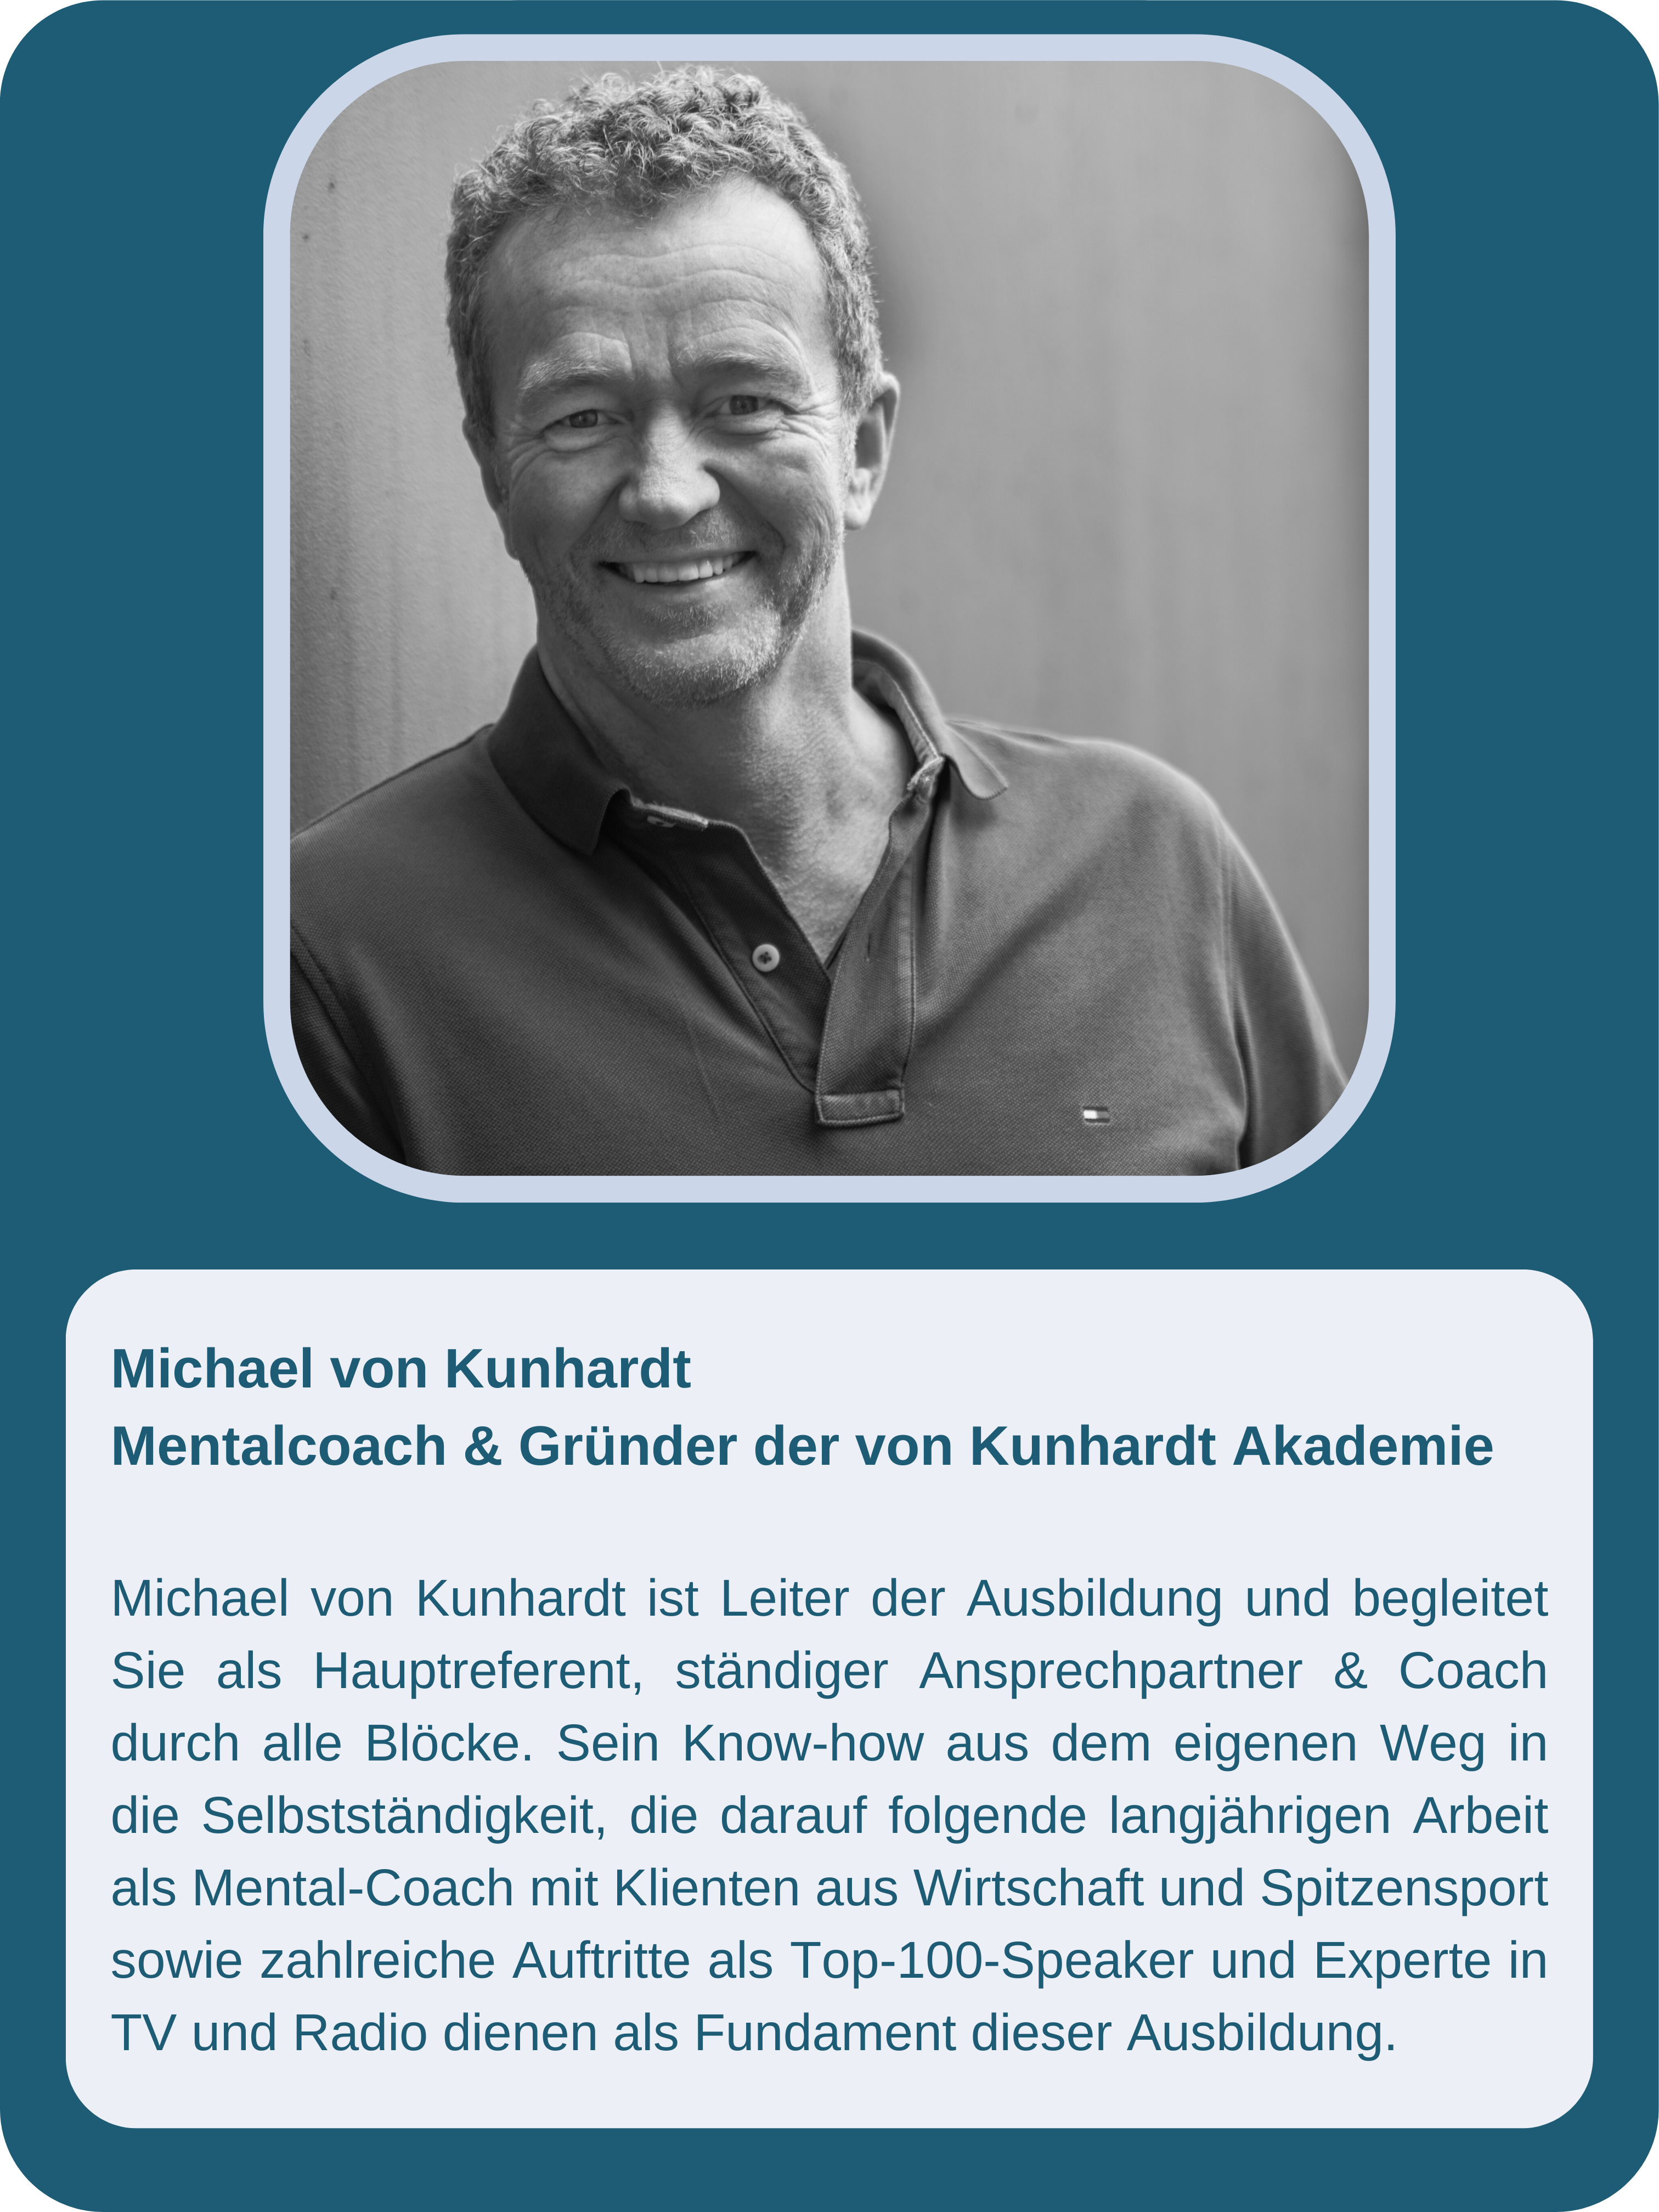 Michael von Kunhardt